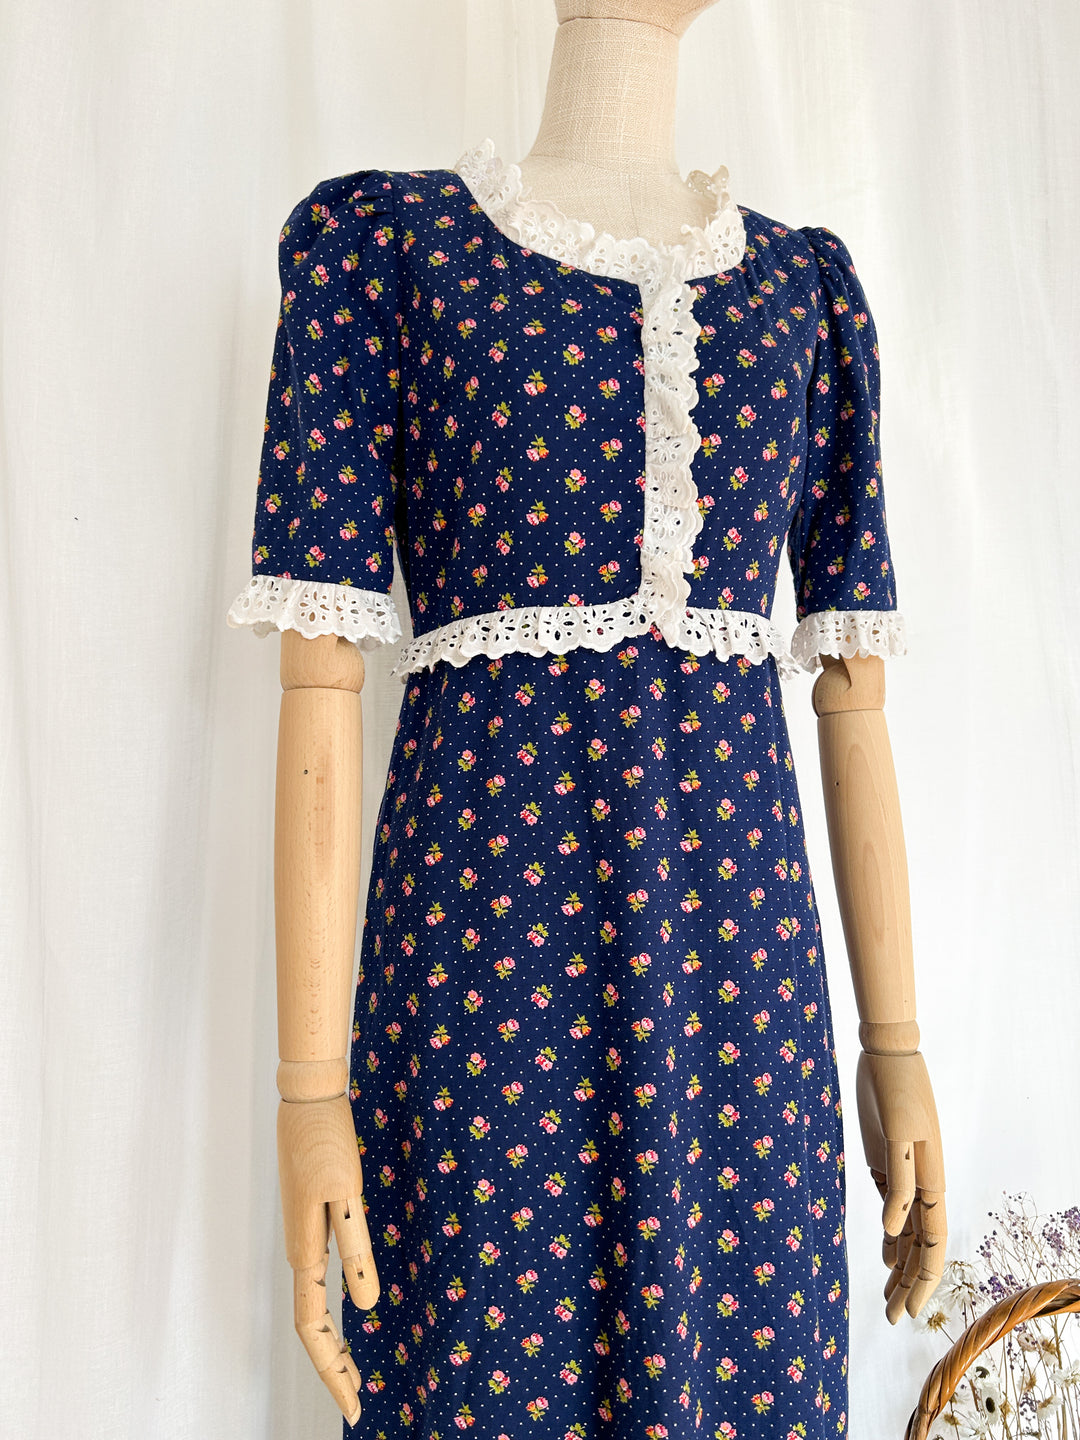 Polly ~ Adorable 70s Polly Peck Navy Floral Cotton Prairie Dress